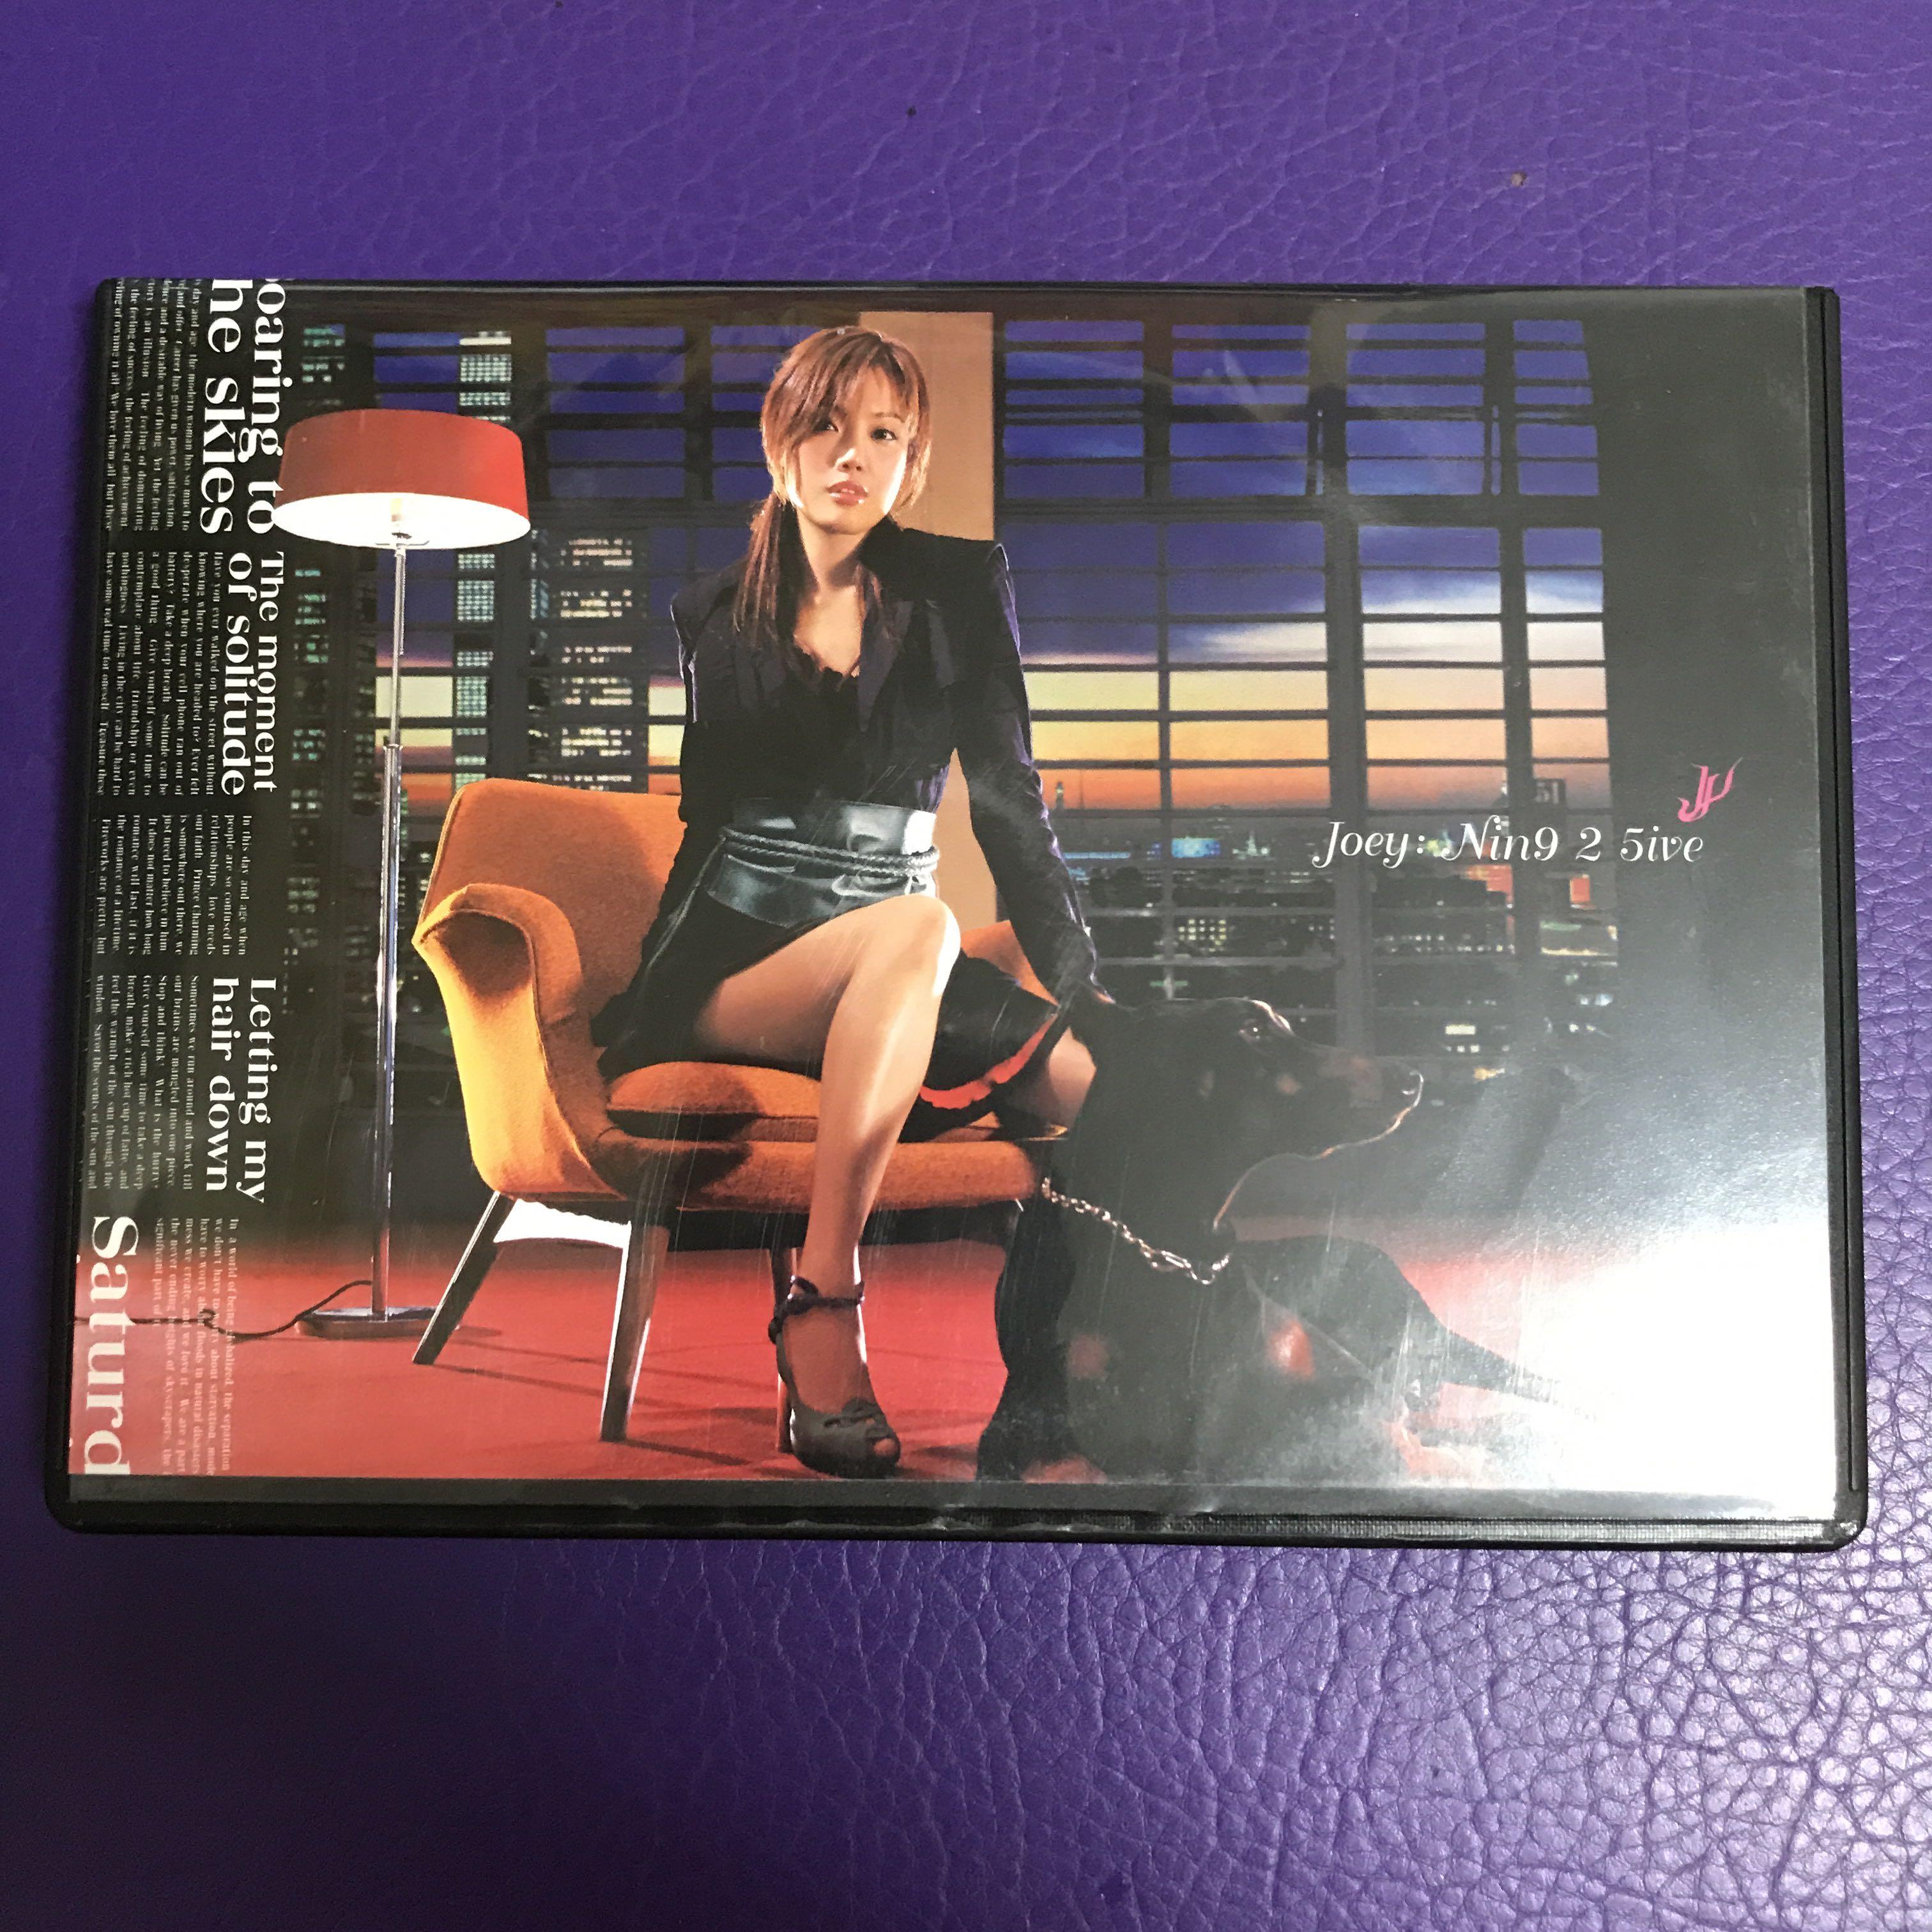 容祖兒JOEY CD VCD NIN9 2 5IVE (第二版) 齊件舊版(2004), 興趣及遊戲